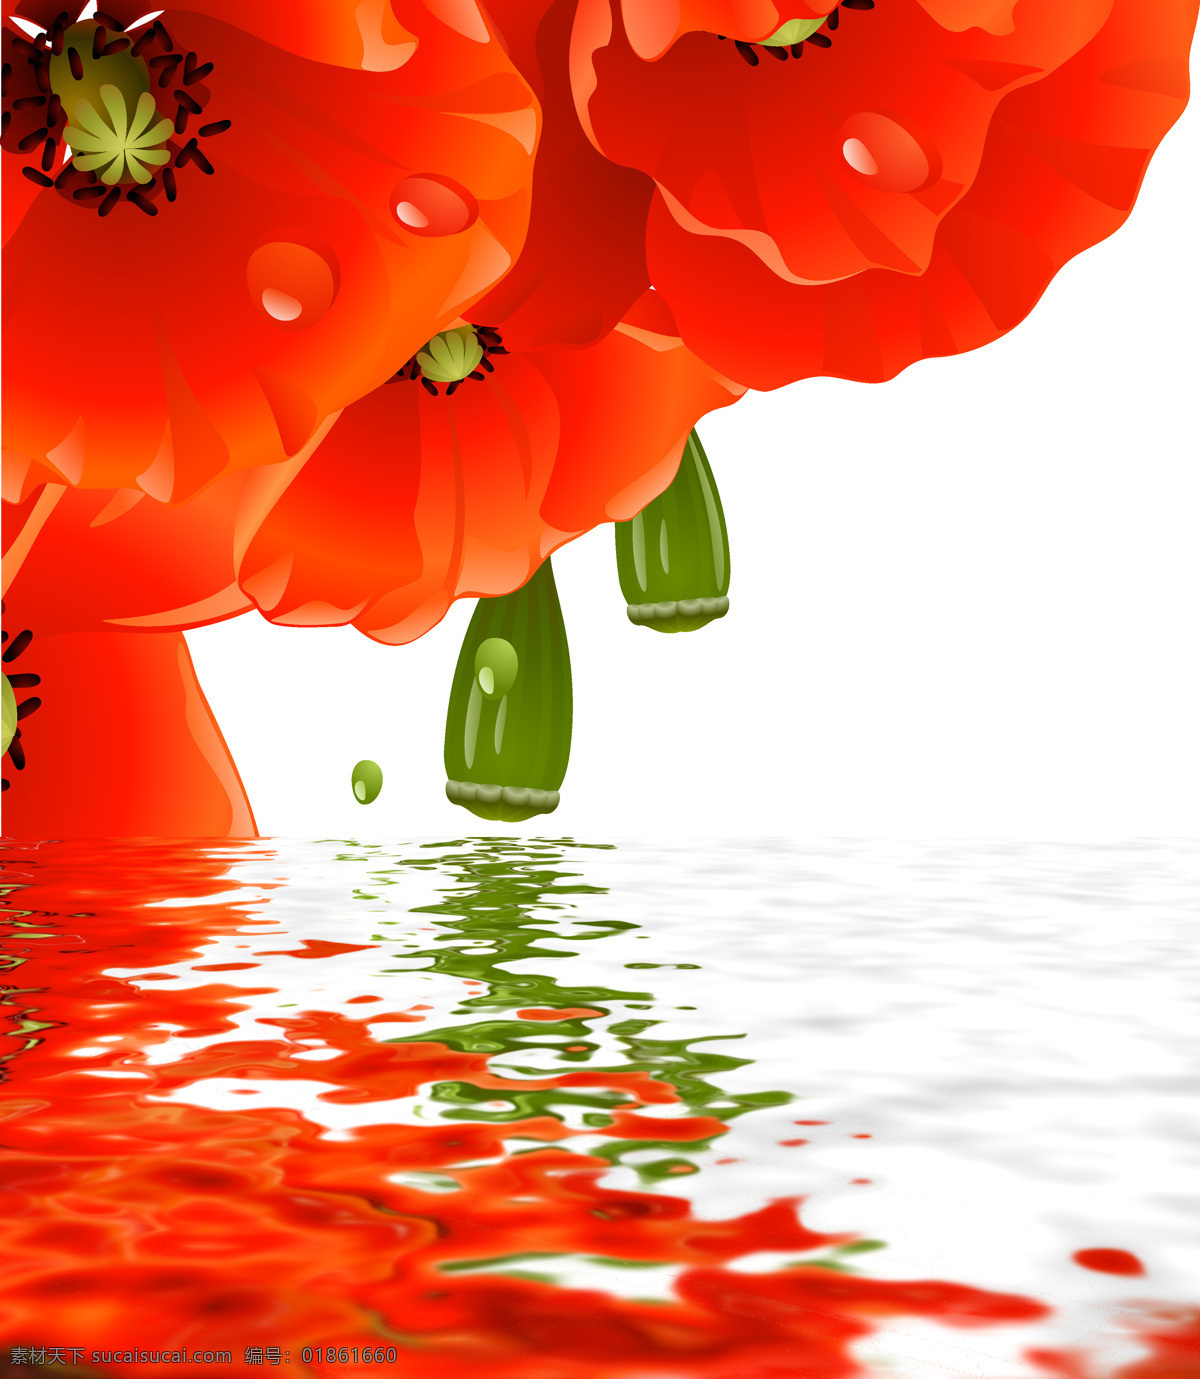 水中花卉 水中 花卉 设计素材 模板下载 红色花卉 红花 倒影 水纹 鲜花 花朵 清新 装饰画 设计图库 生物世界 花草